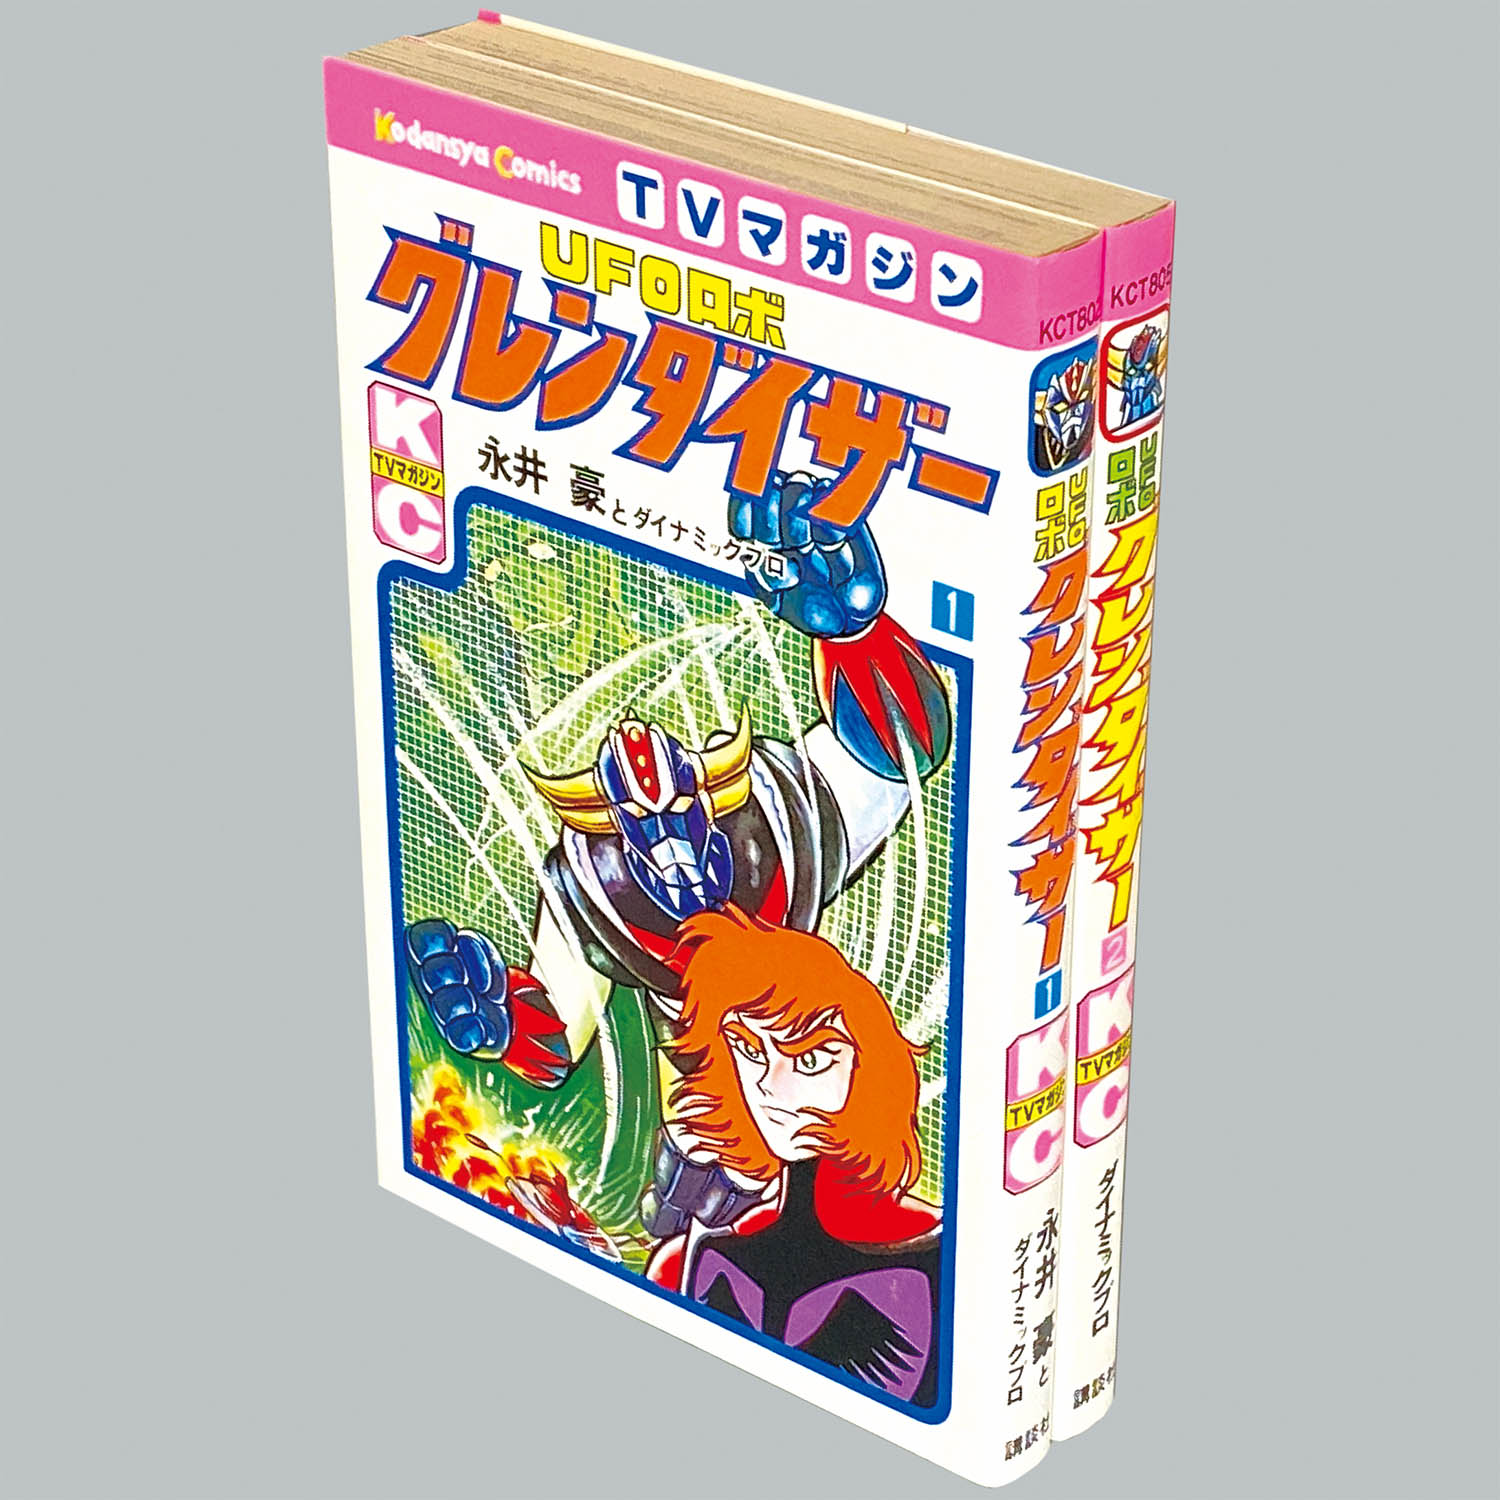 UFOロボ グレンダイザー BOX1 BOX2 セット - DVD